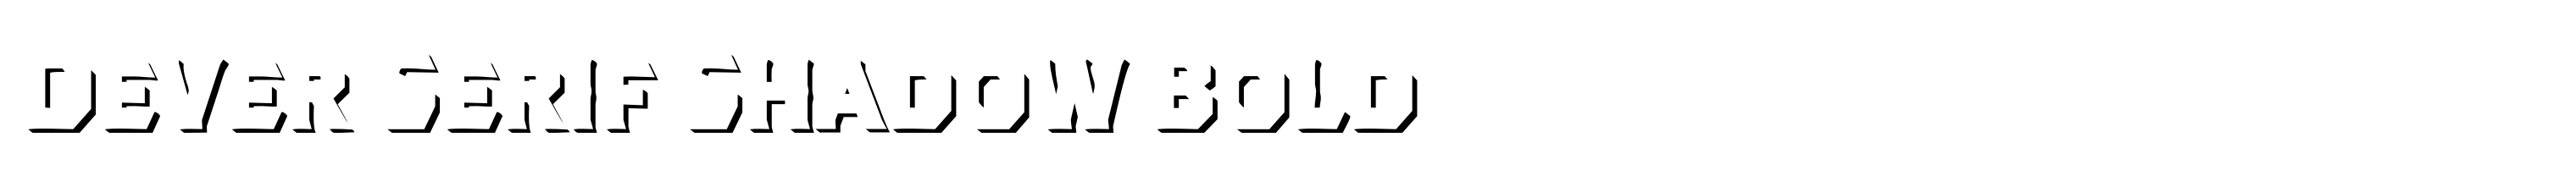 Dever Serif Shadow Bold